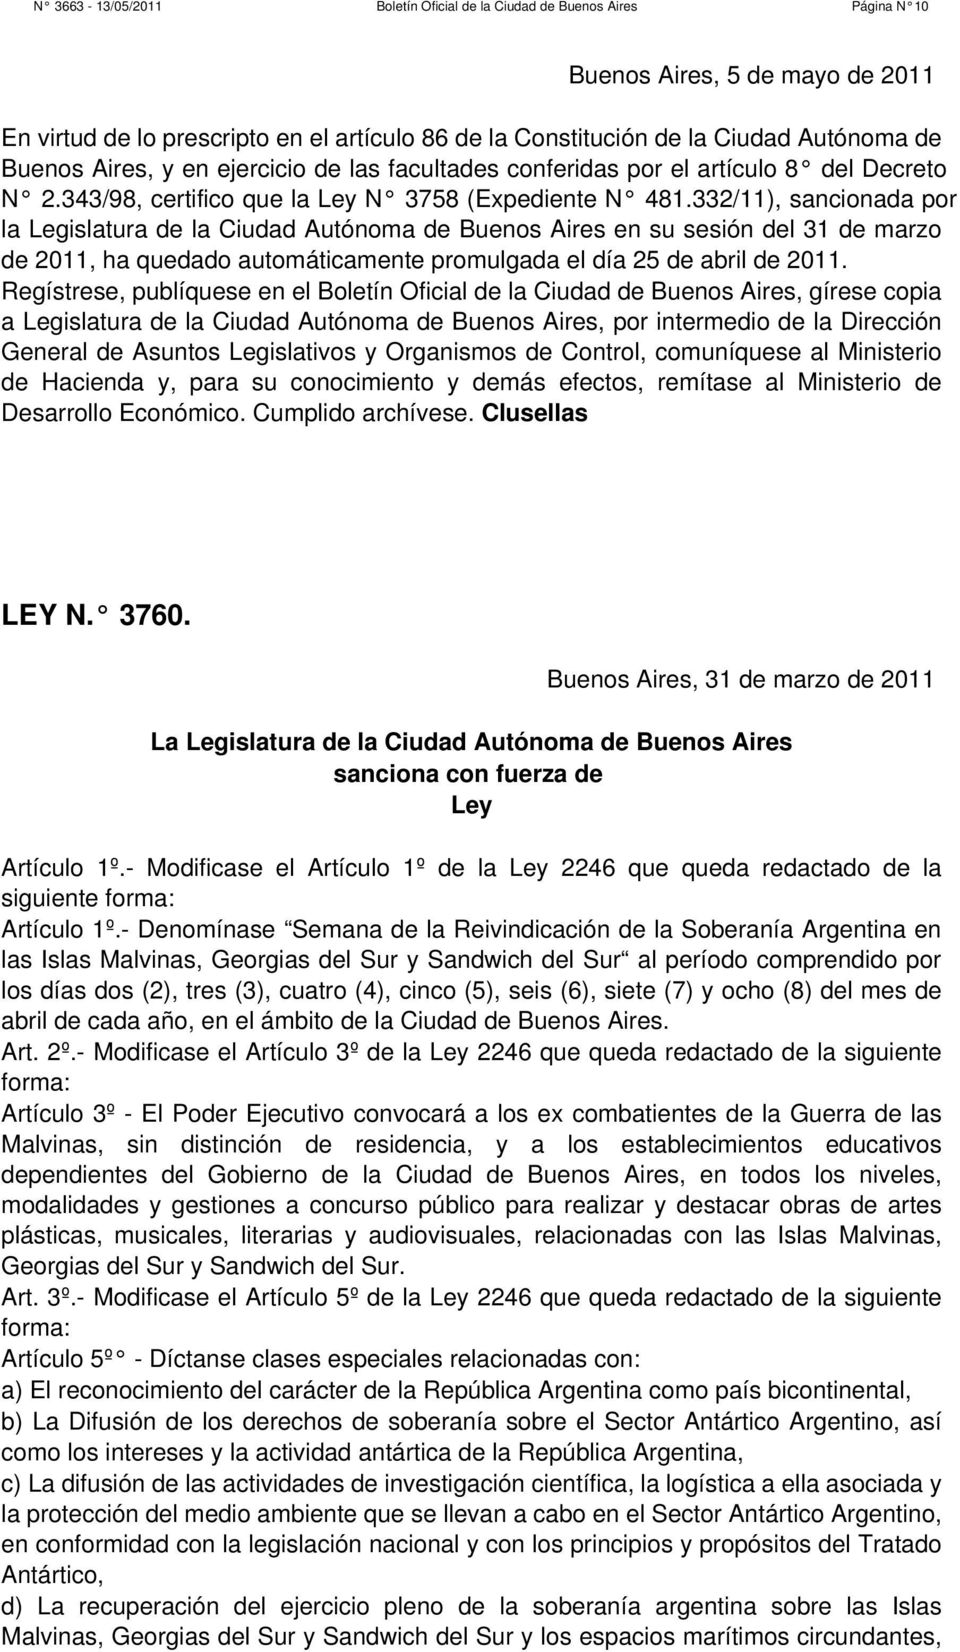 332/11), sancionada por la Legislatura de la Ciudad Autónoma de Buenos Aires en su sesión del 31 de marzo de 2011, ha quedado automáticamente promulgada el día 25 de abril de 2011.